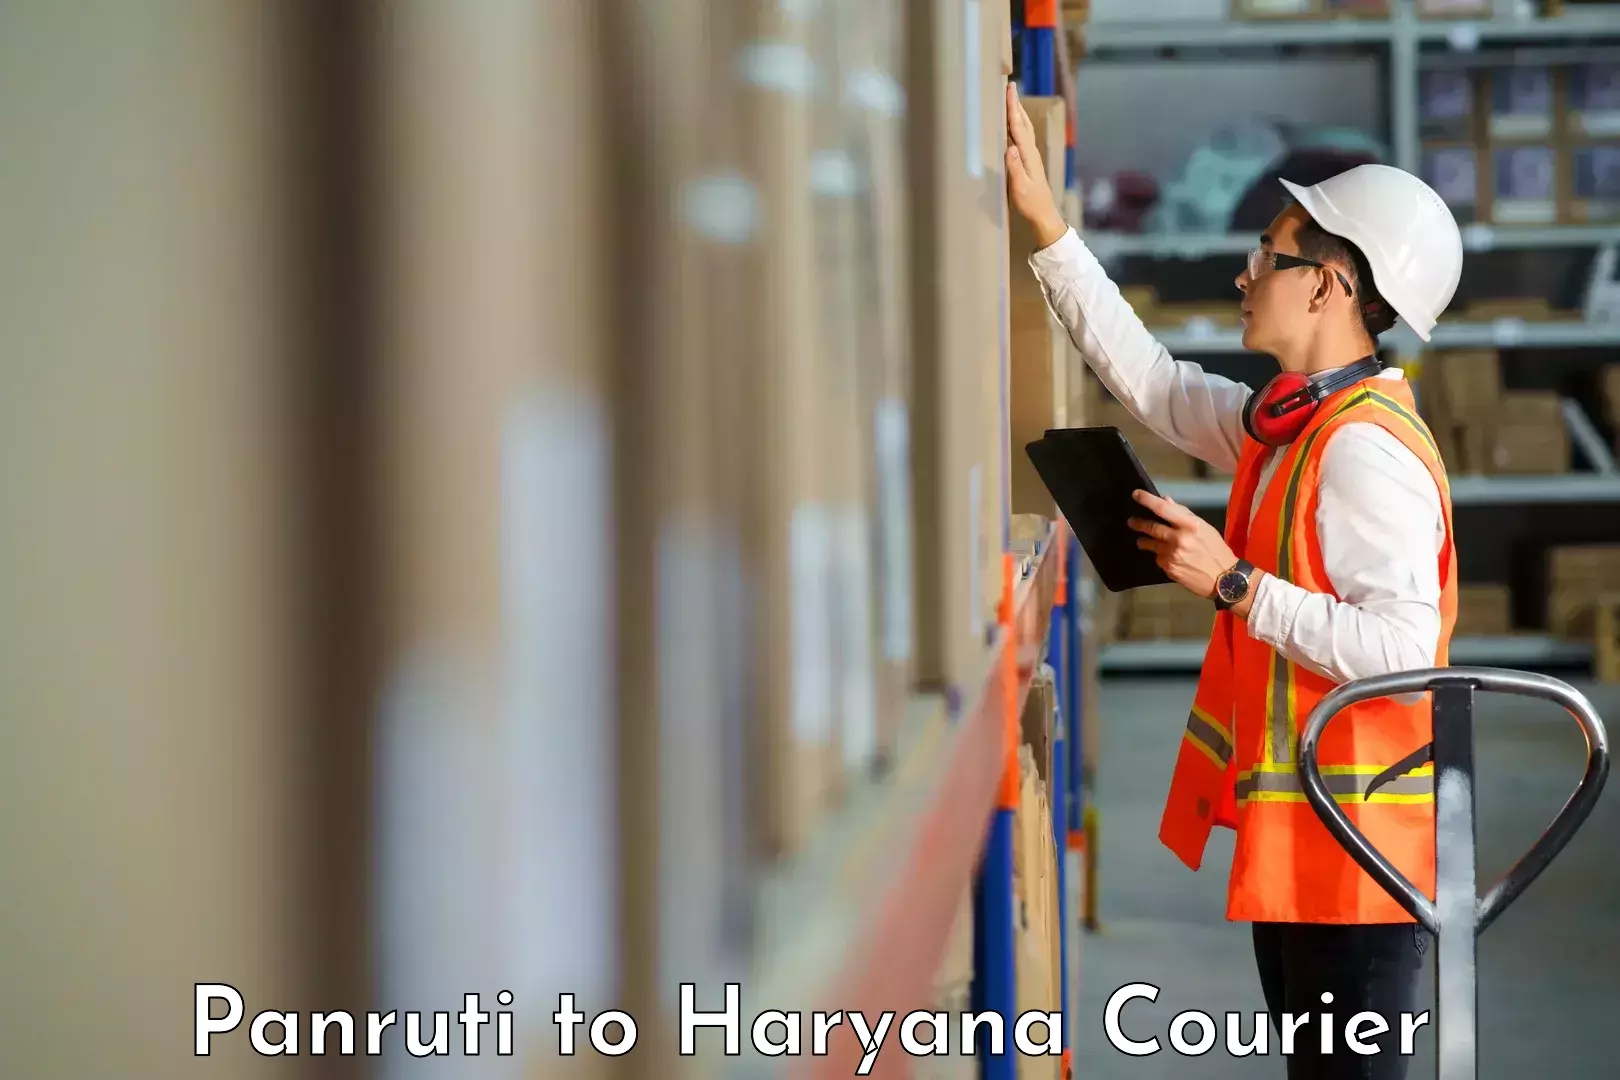 Automated shipping processes Panruti to Chaudhary Charan Singh Haryana Agricultural University Hisar